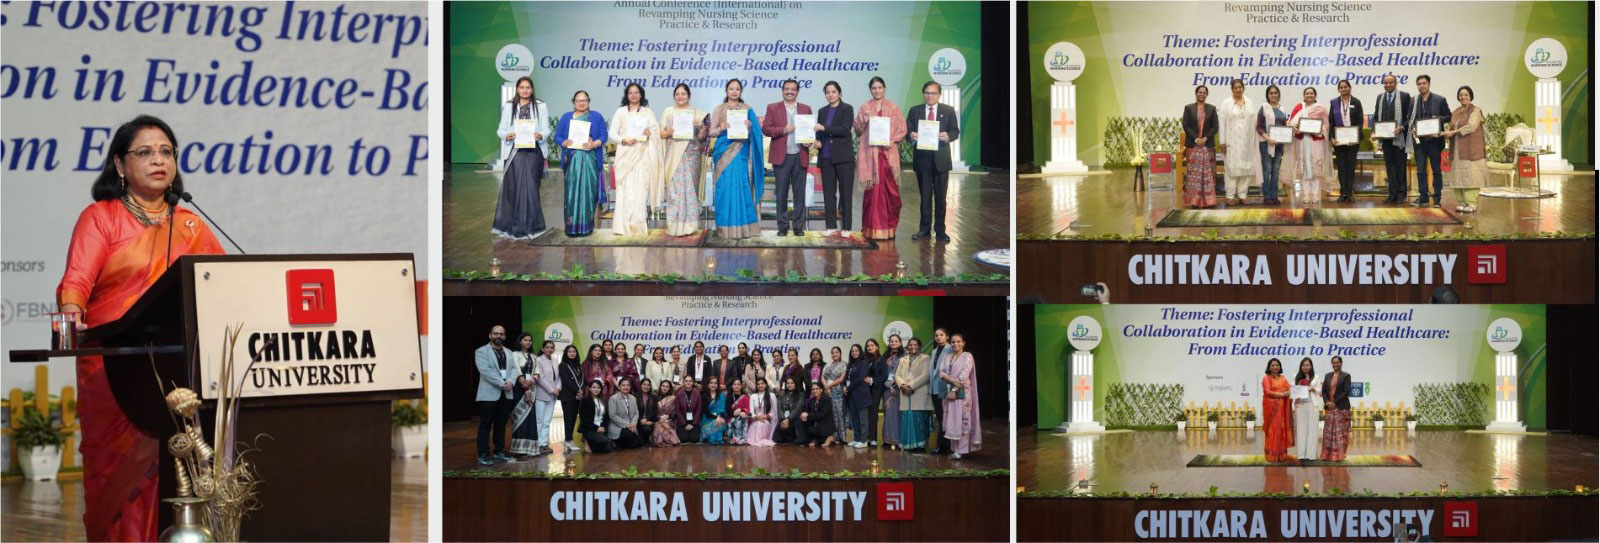 Annual International Conference - Chitkara University